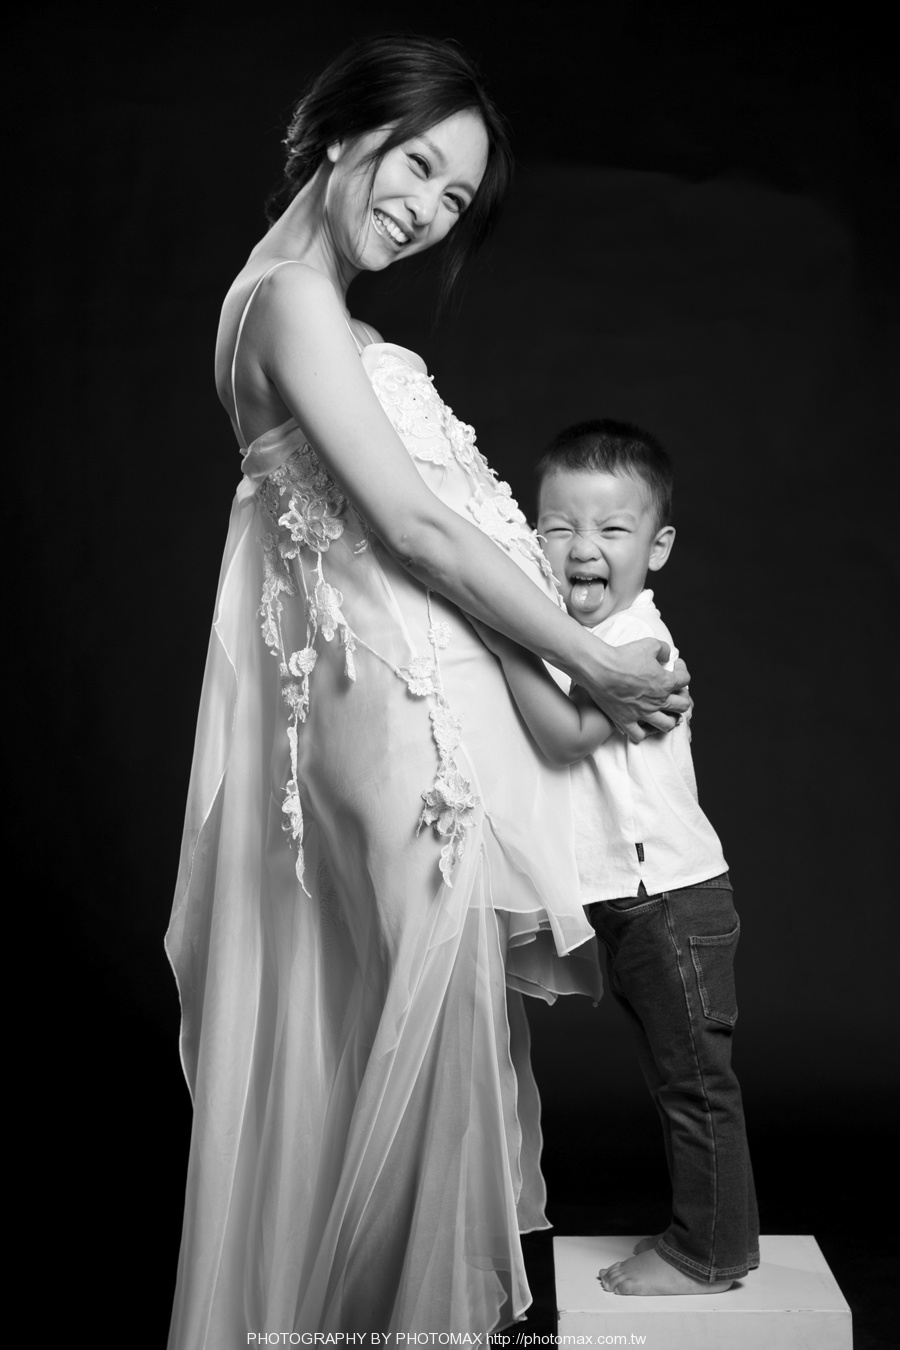 小米 PHOTO MAX 麦叔叔 儿童团摄影 宝宝照 亲子摄影 (8)